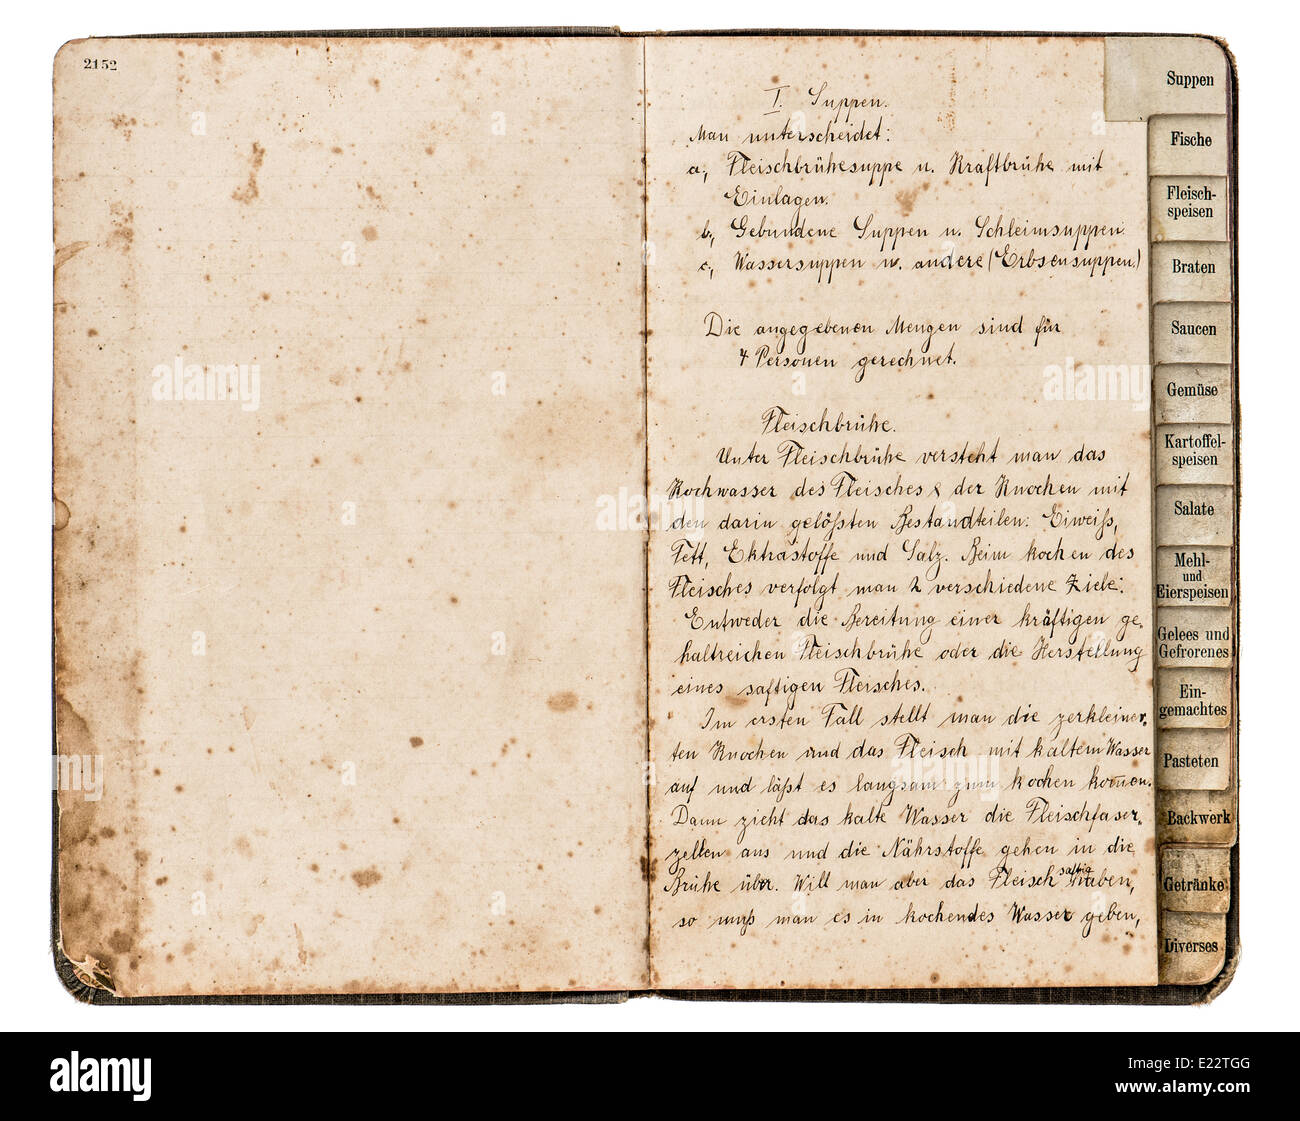 Abrir libro de recetas antiguas con texto manuscrito, sopa de carne en alemán, ca 1900 Foto de stock